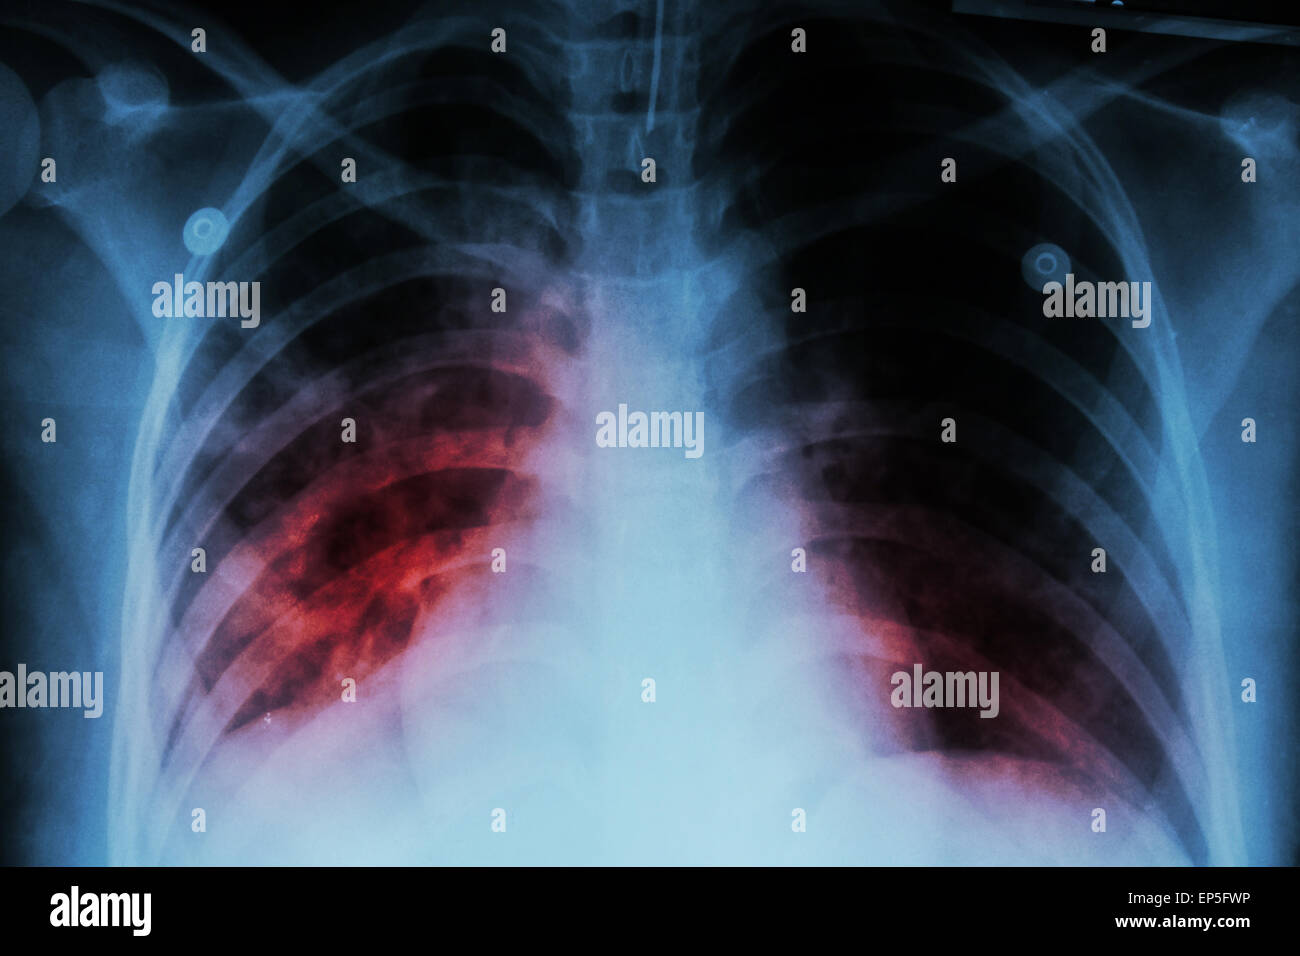 La tubercolosi polmonare ( TB ) : i raggi x al torace mostra infiltrazione alveolare in corrispondenza di entrambi i polmoni a causa di mycobacterium tuberculosis infectio Foto Stock